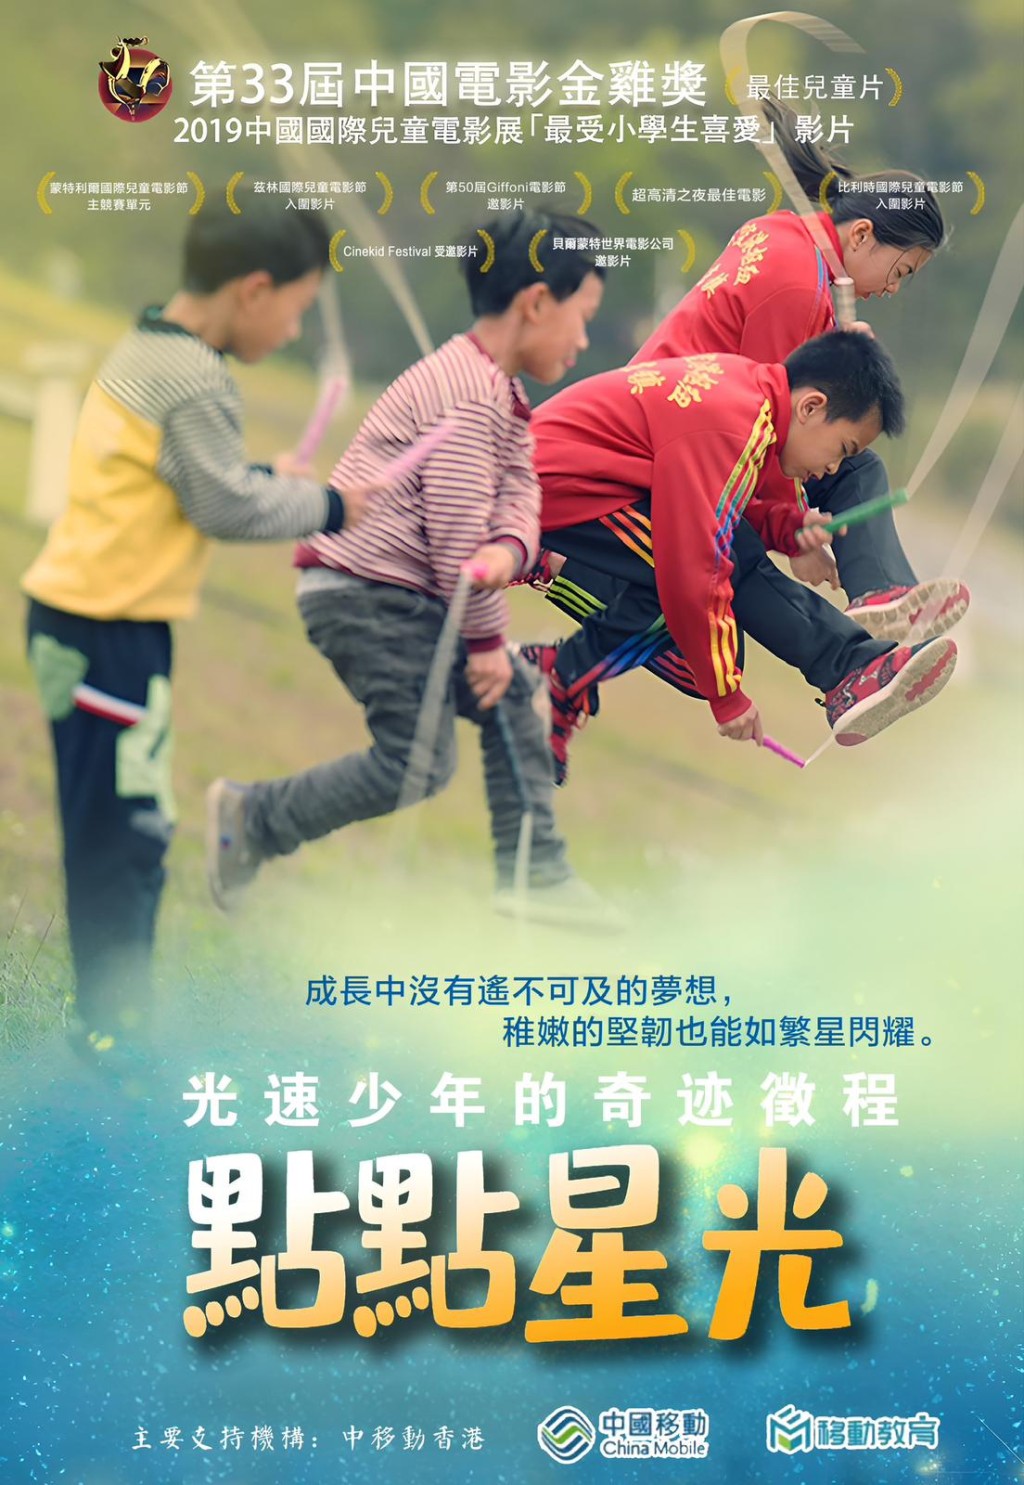 《點點星光》影片獲第 33 屆中國電影金雞獎「最佳兒童片」